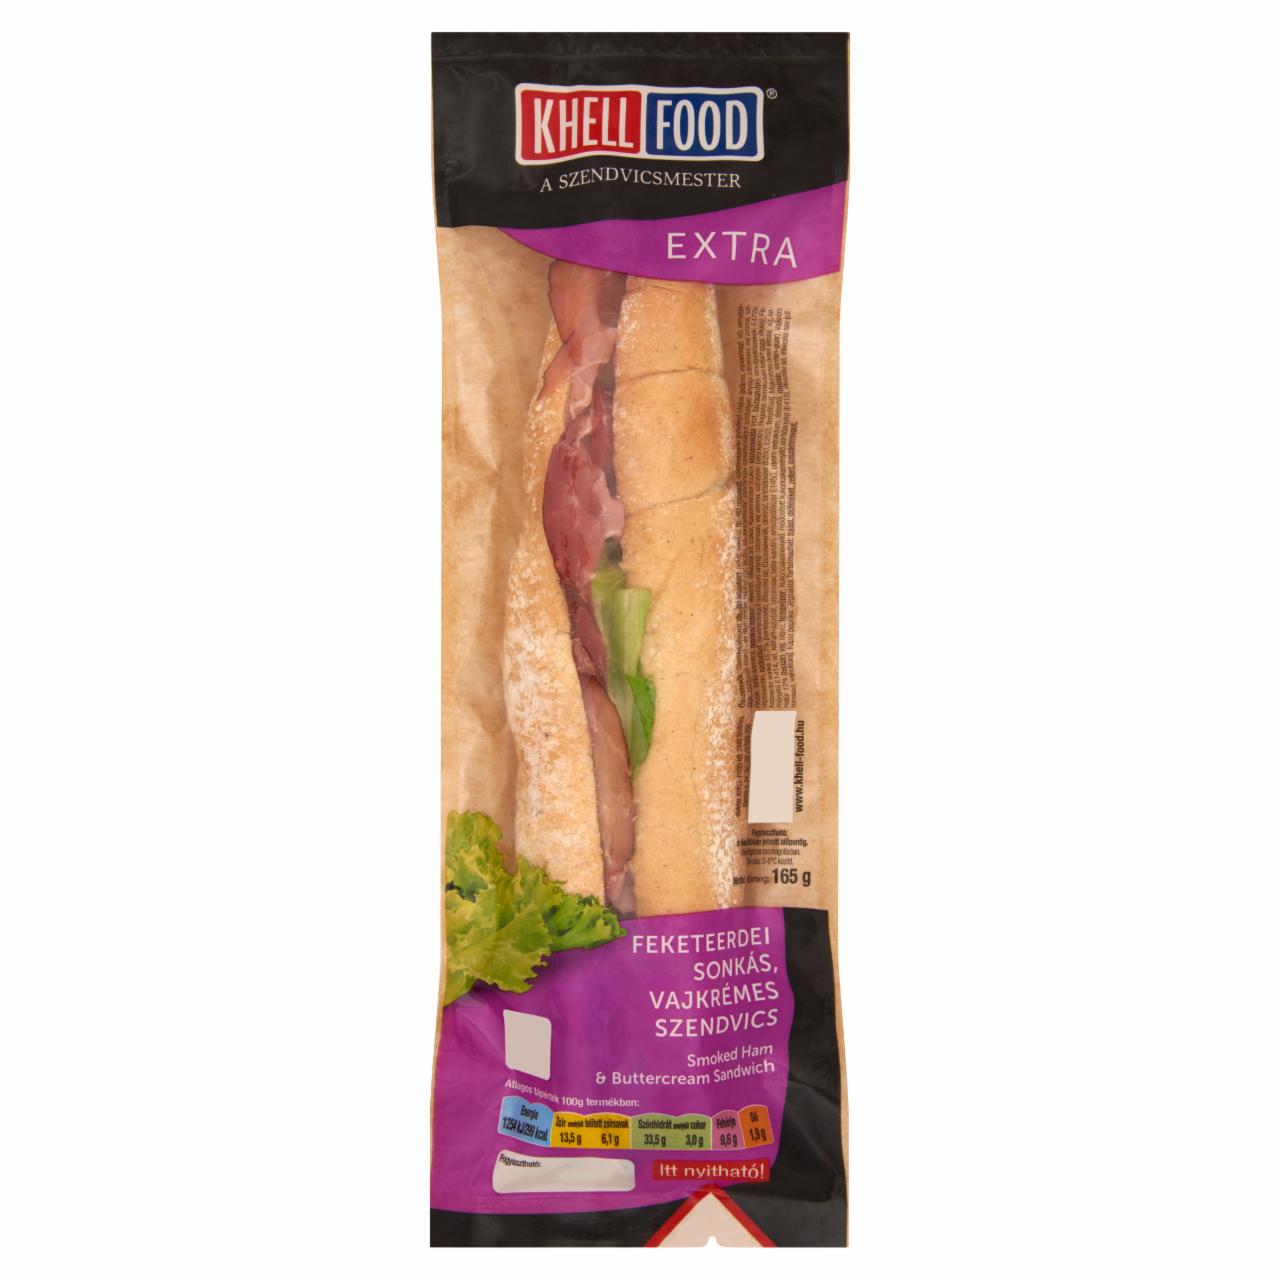 Képek - Khell-Food Extra feketeerdei sonkás, vajkrémes szendvics 165 g